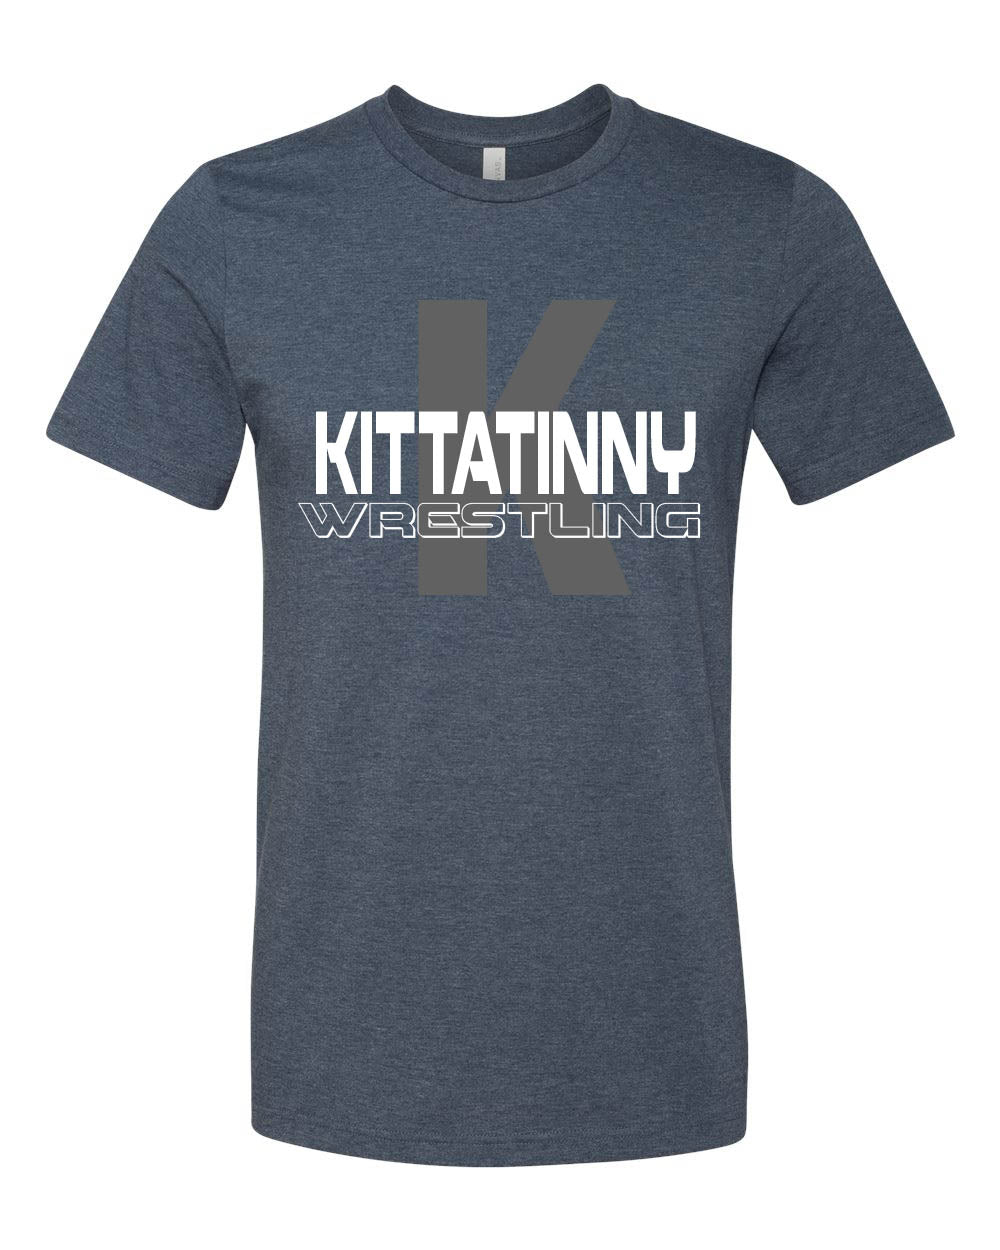 Kittatinny Wrestling Design 5 t-Shirt